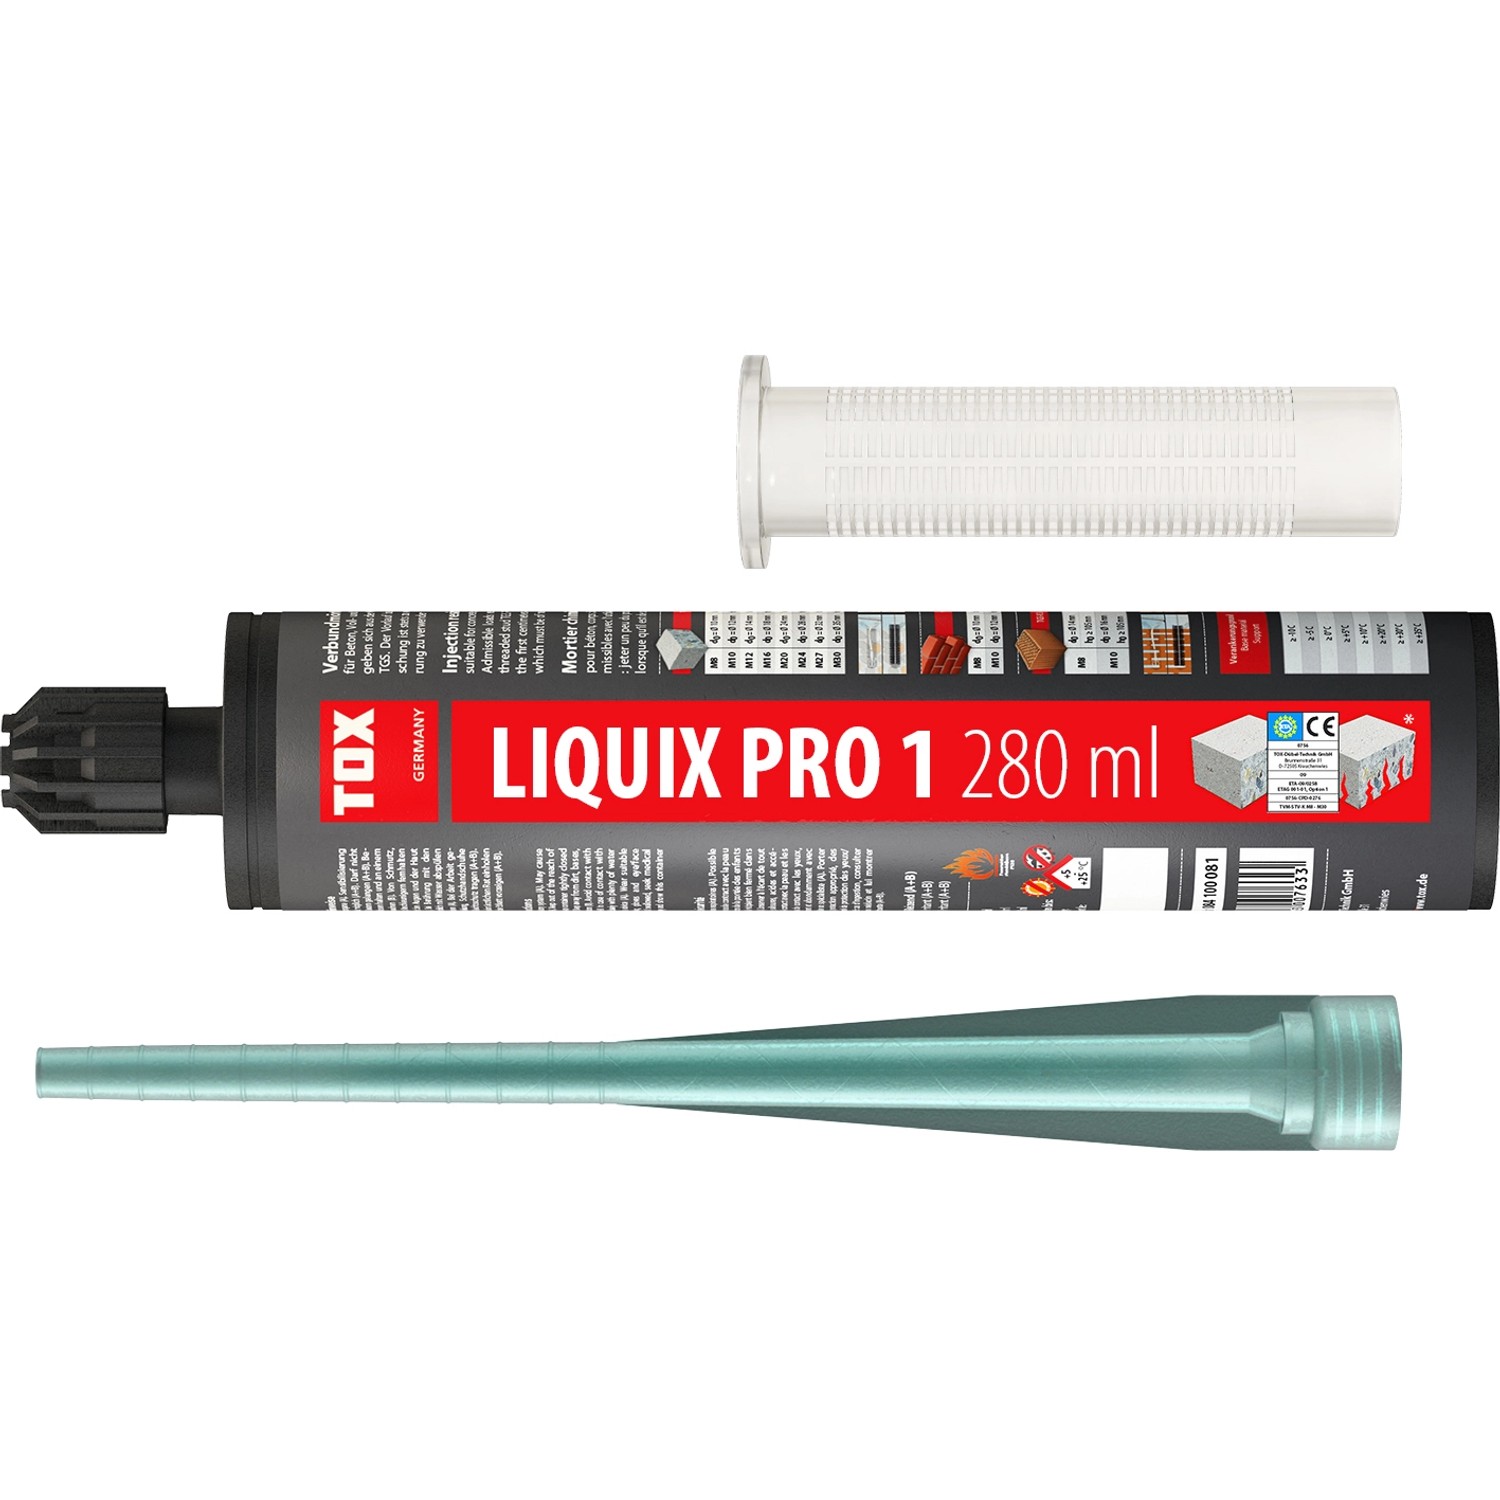 Tox Verbundmörtel Liquix Pro 1 styrolfrei 280 ml